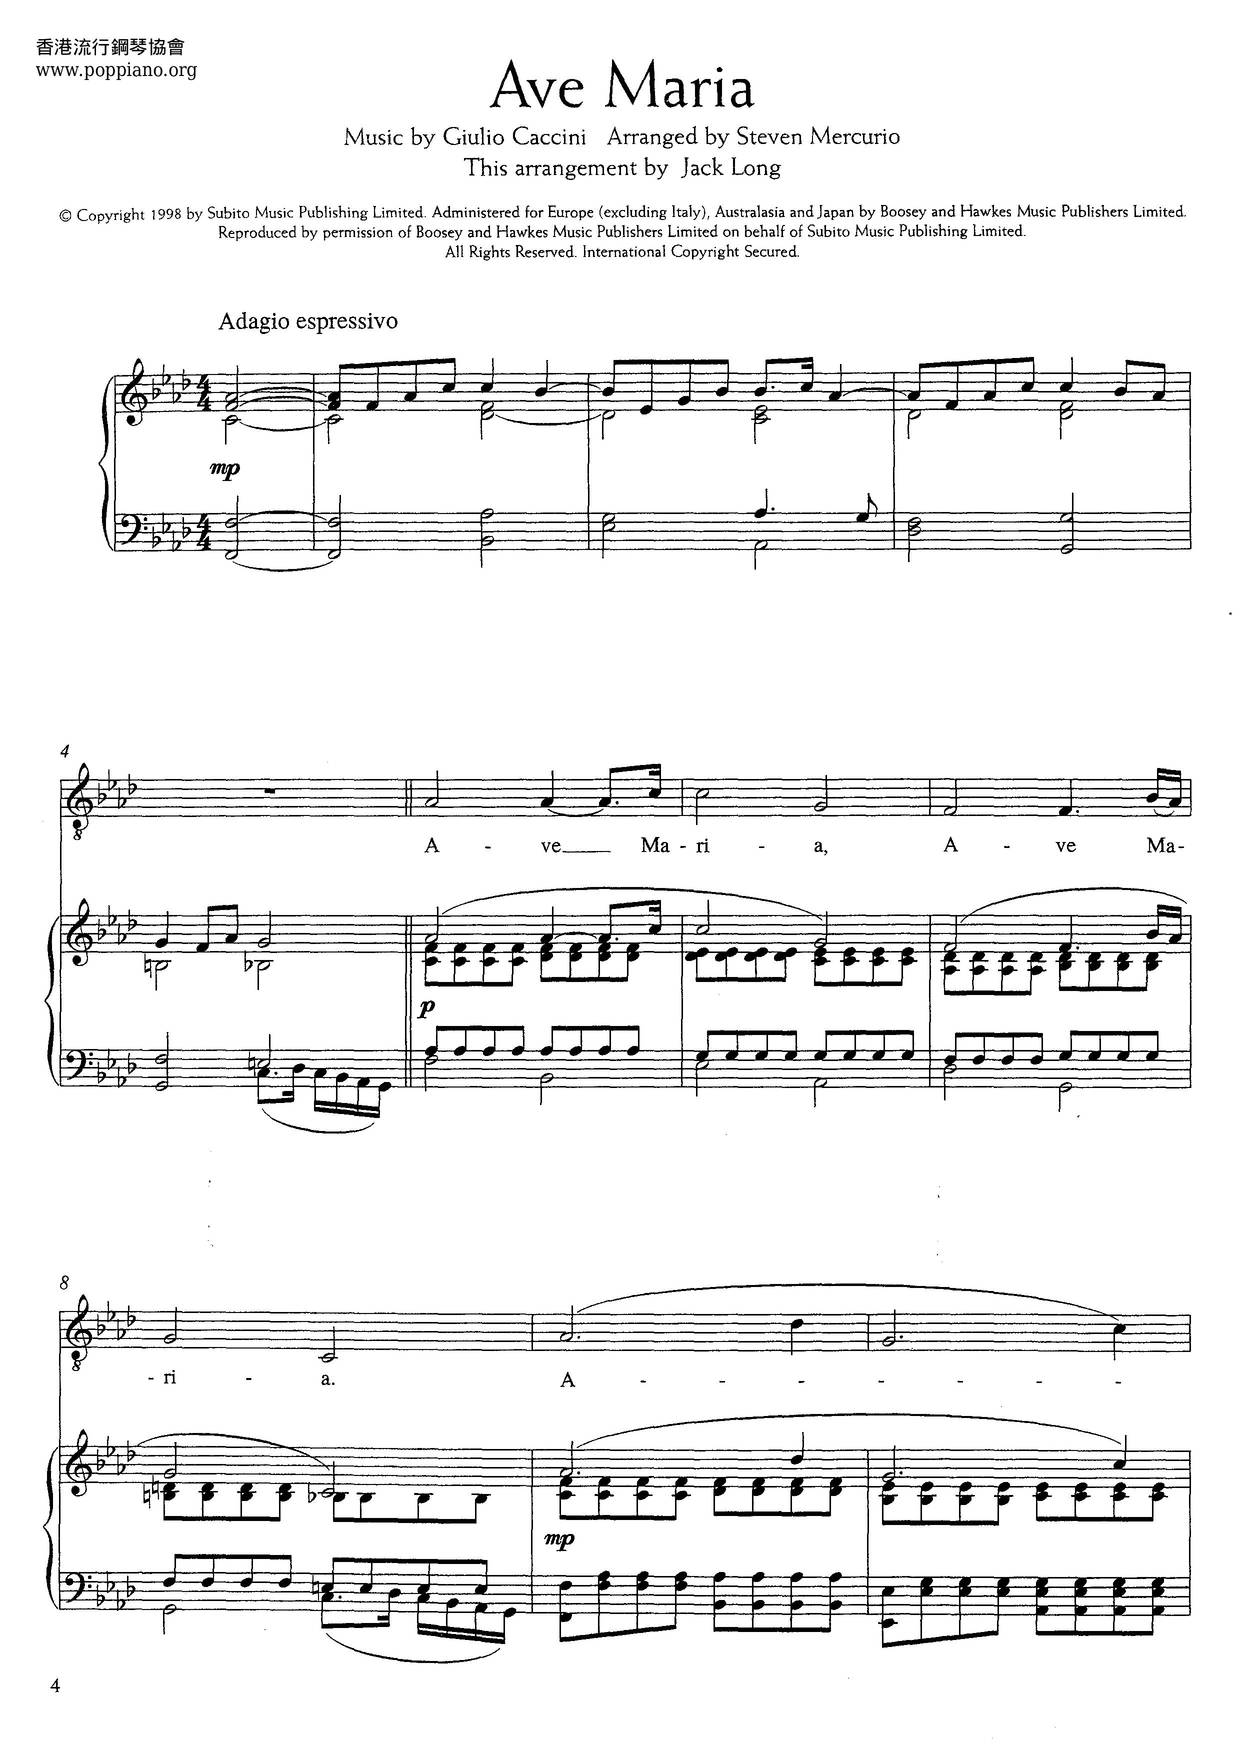 Ave Maria (Caccini) Score